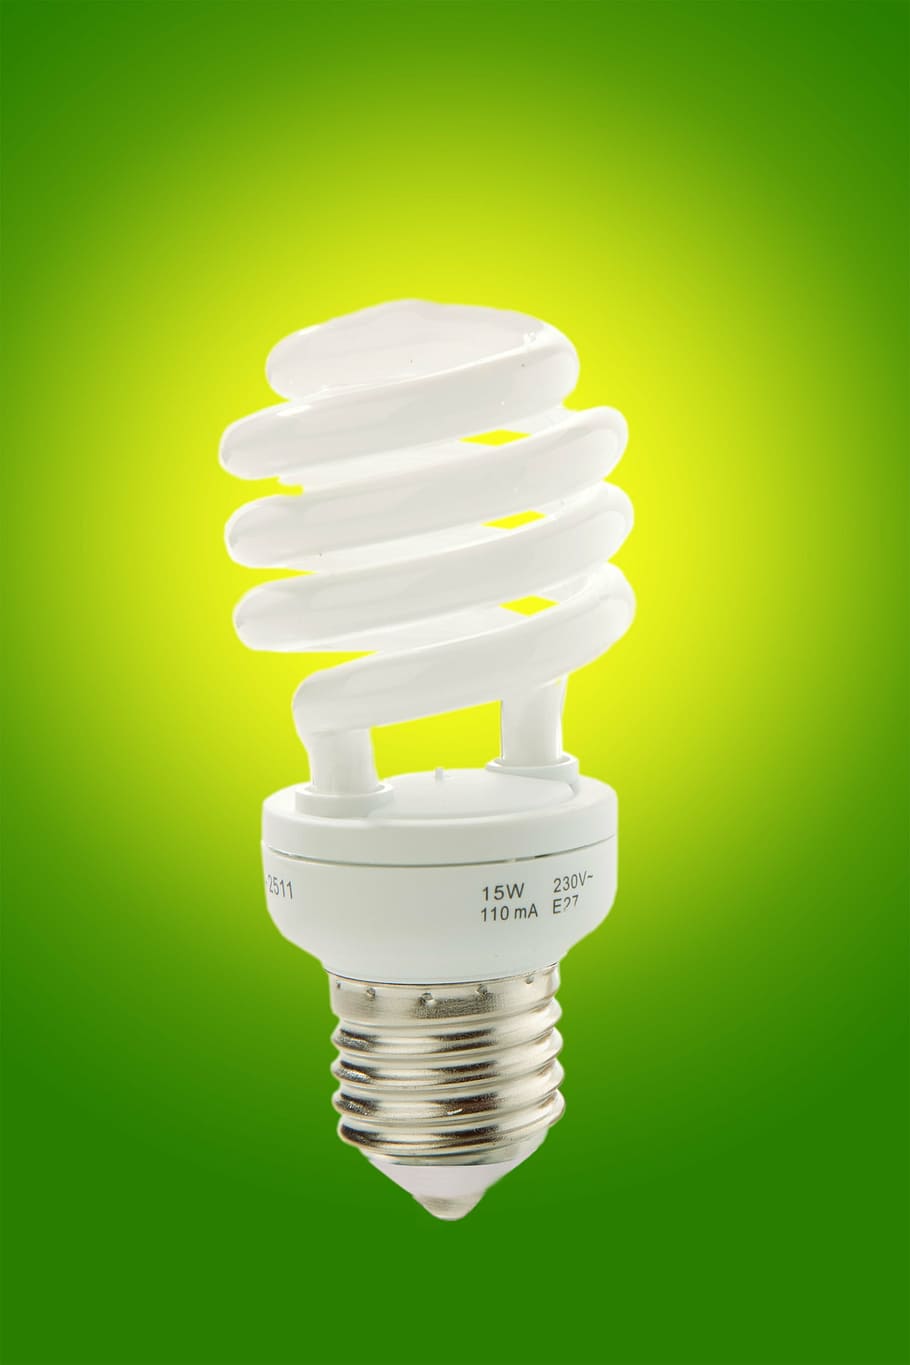 bohlam spiral putih, sparlampe, lampu hemat, cahaya, hemat listrik, arus, hemat, energi, energiparlampe, mode hemat daya